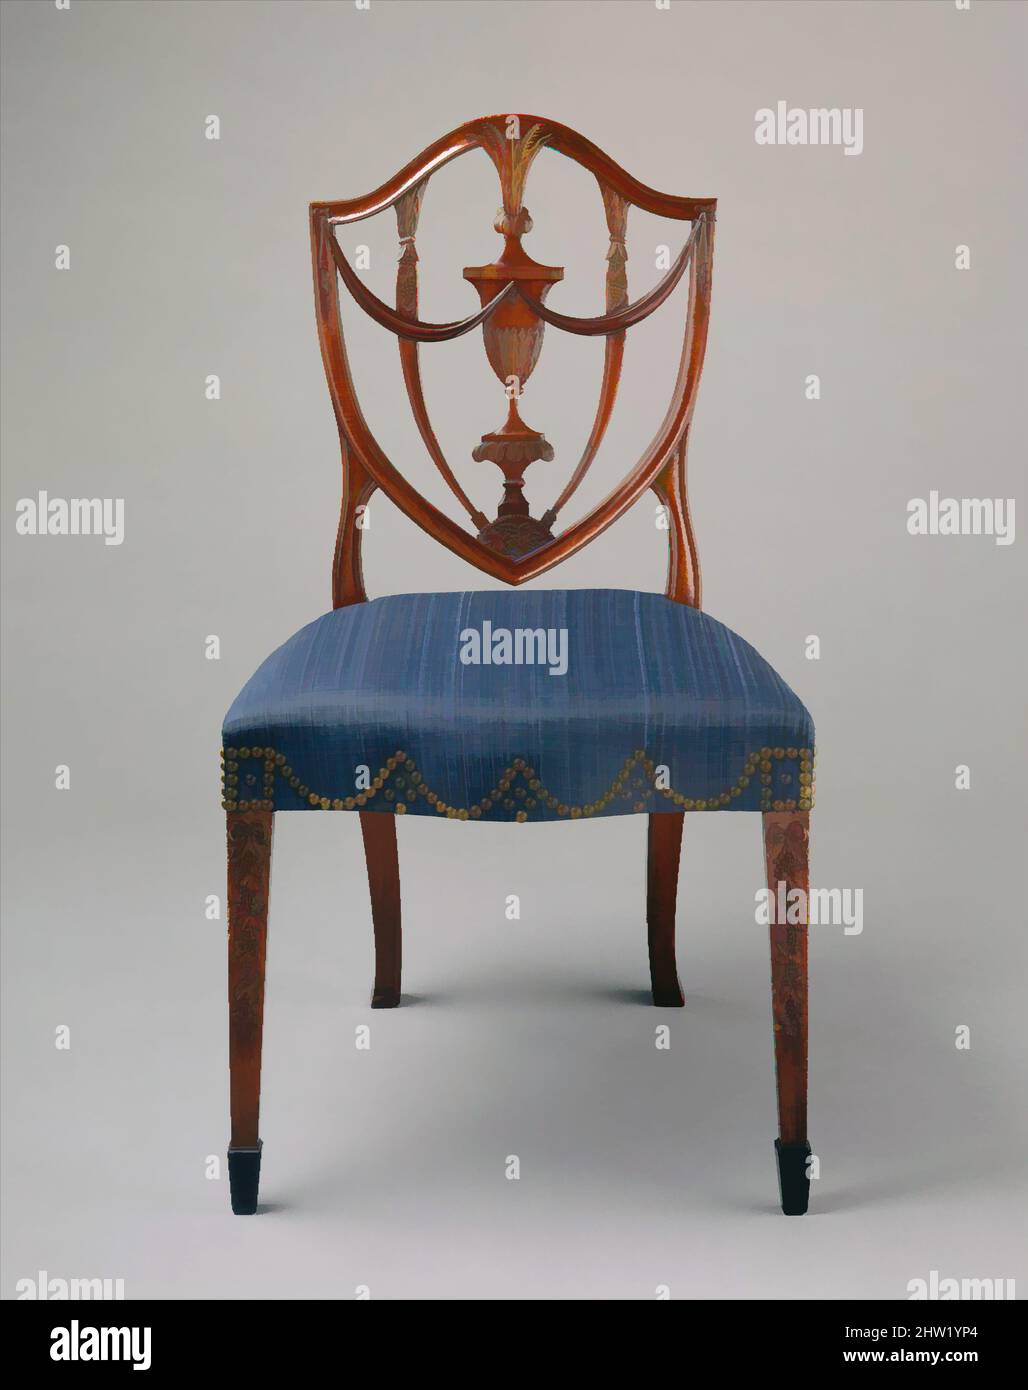 Art inspiré par Side chair, 1794–99, fabriqué à Salem, Massachusetts, États-Unis, Américain, acajou, ébène, frêne, bouleau, pin blanc, 37 7/8 x 27 7/8 x 18 po (96,2 x 70,8 x 45,7 cm), mobilier, attribué à Samuel McIntyre (1757–1811), cette chaise à dossier vase a été conçue à l'origine pour les œuvres classiques modernisées par Artotop avec une touche de modernité. Formes, couleur et valeur, impact visuel accrocheur sur l'art émotions par la liberté d'œuvres d'art d'une manière contemporaine. Un message intemporel qui cherche une nouvelle direction créative. Artistes qui se tournent vers le support numérique et créent le NFT Artotop Banque D'Images